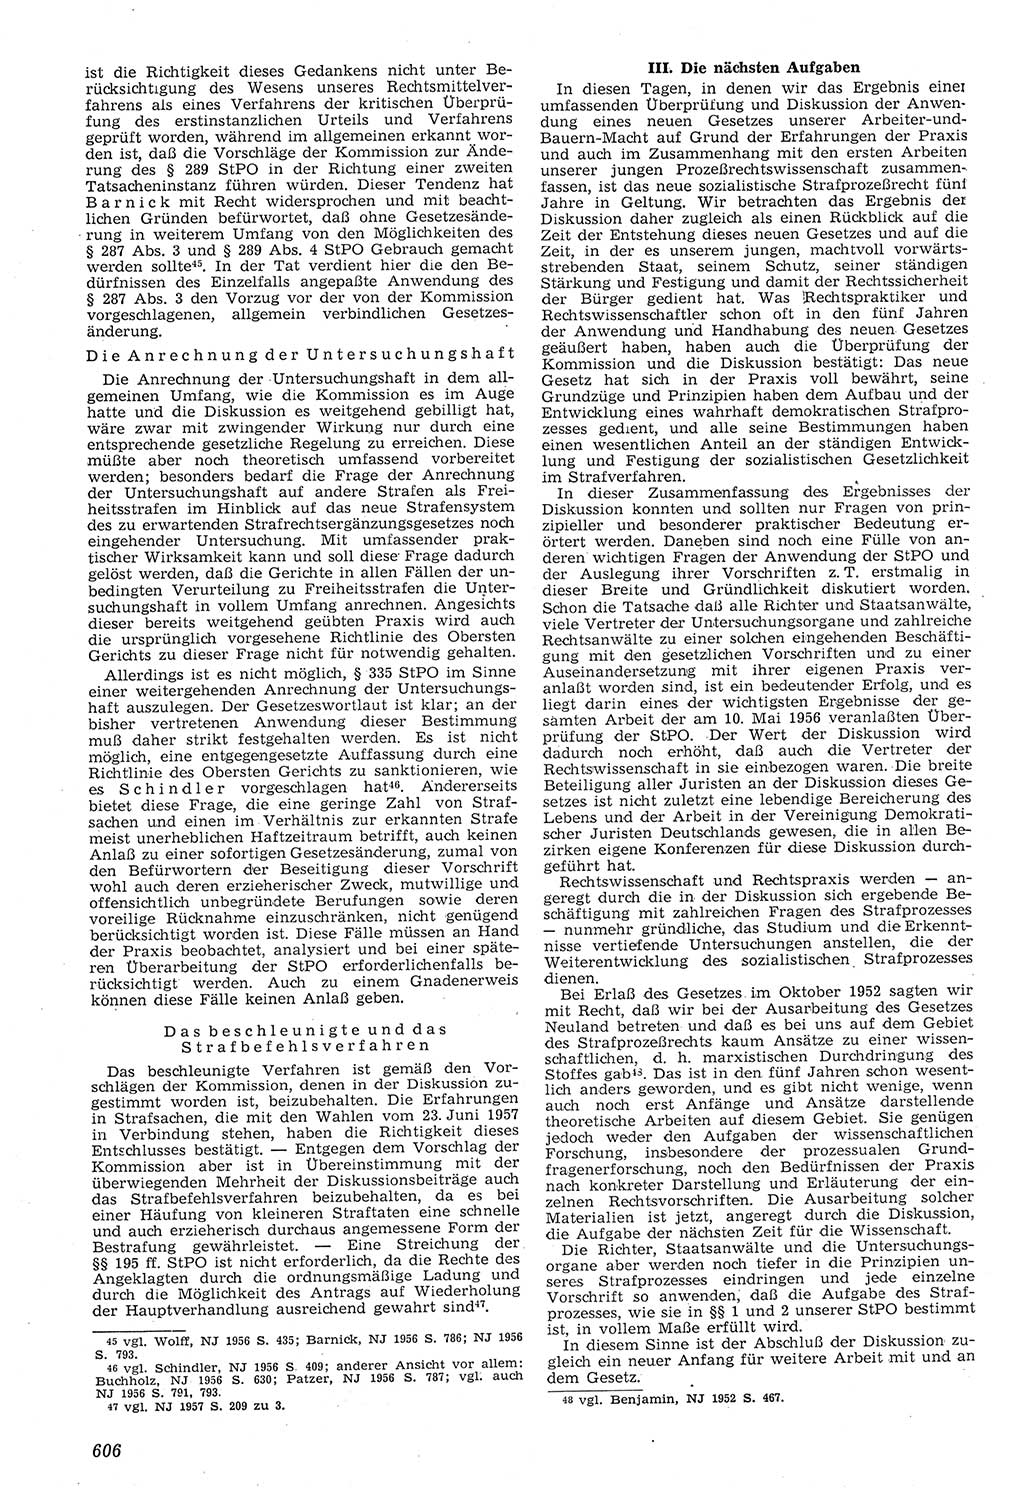 Neue Justiz (NJ), Zeitschrift für Recht und Rechtswissenschaft [Deutsche Demokratische Republik (DDR)], 11. Jahrgang 1957, Seite 606 (NJ DDR 1957, S. 606)